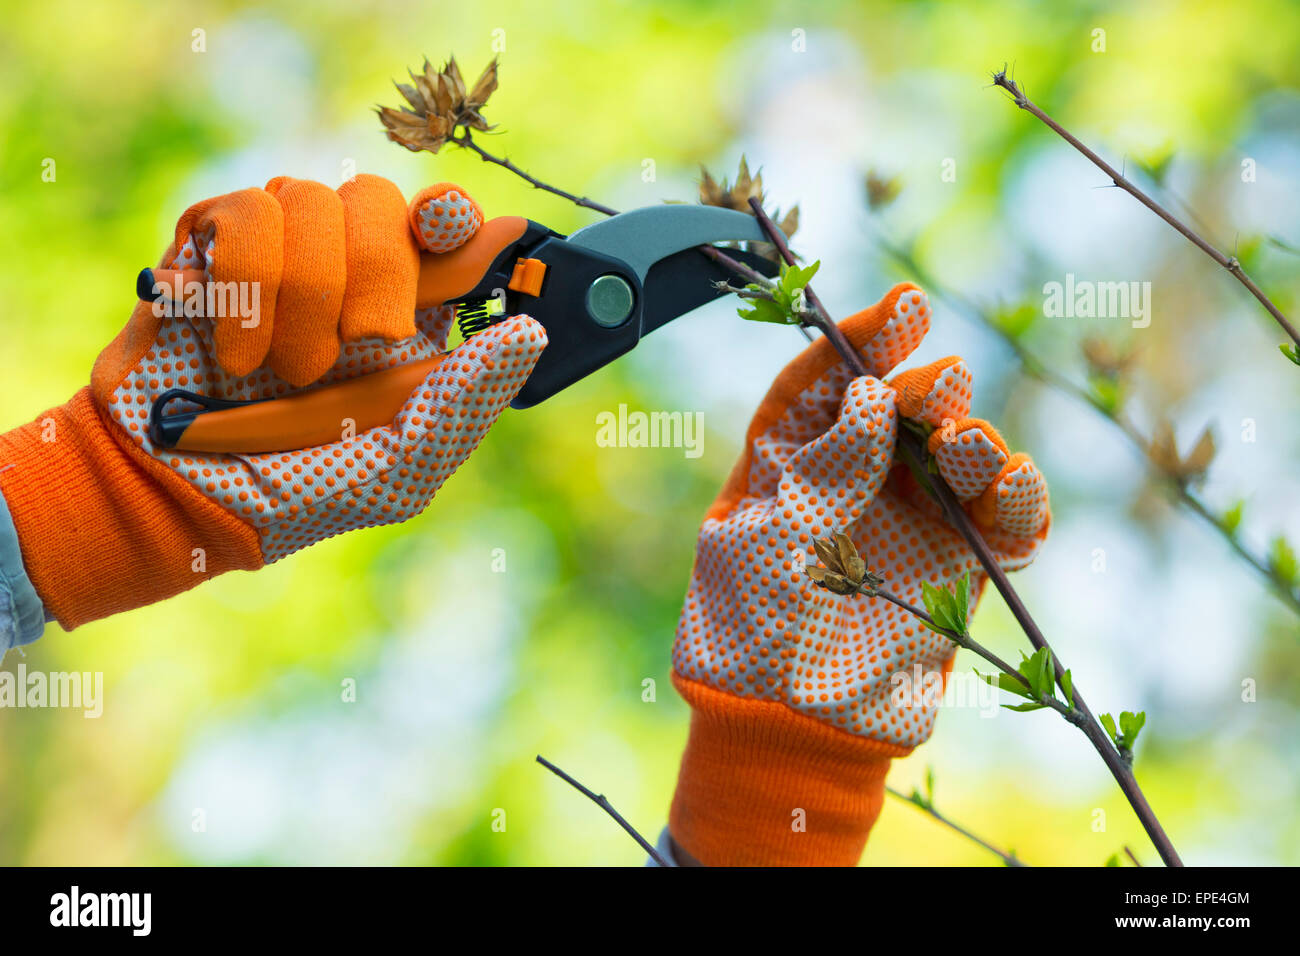 Gartenarbeit, beschneiden Hibiskus Pflanze, Handschuhe und Scheren Stockfoto